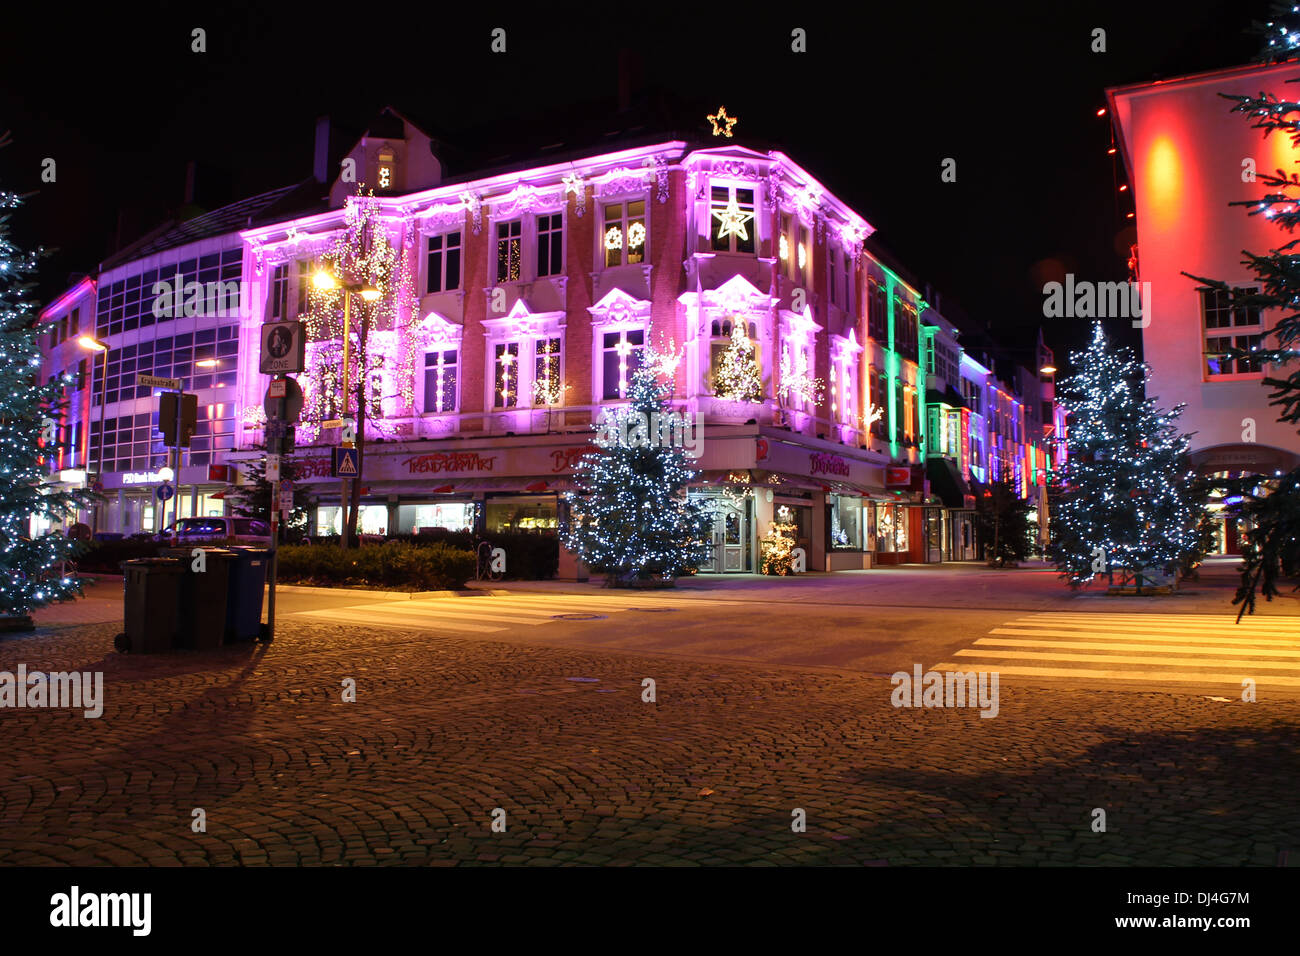 Weihnachten in Osnabrück Stockfotografie - Alamy